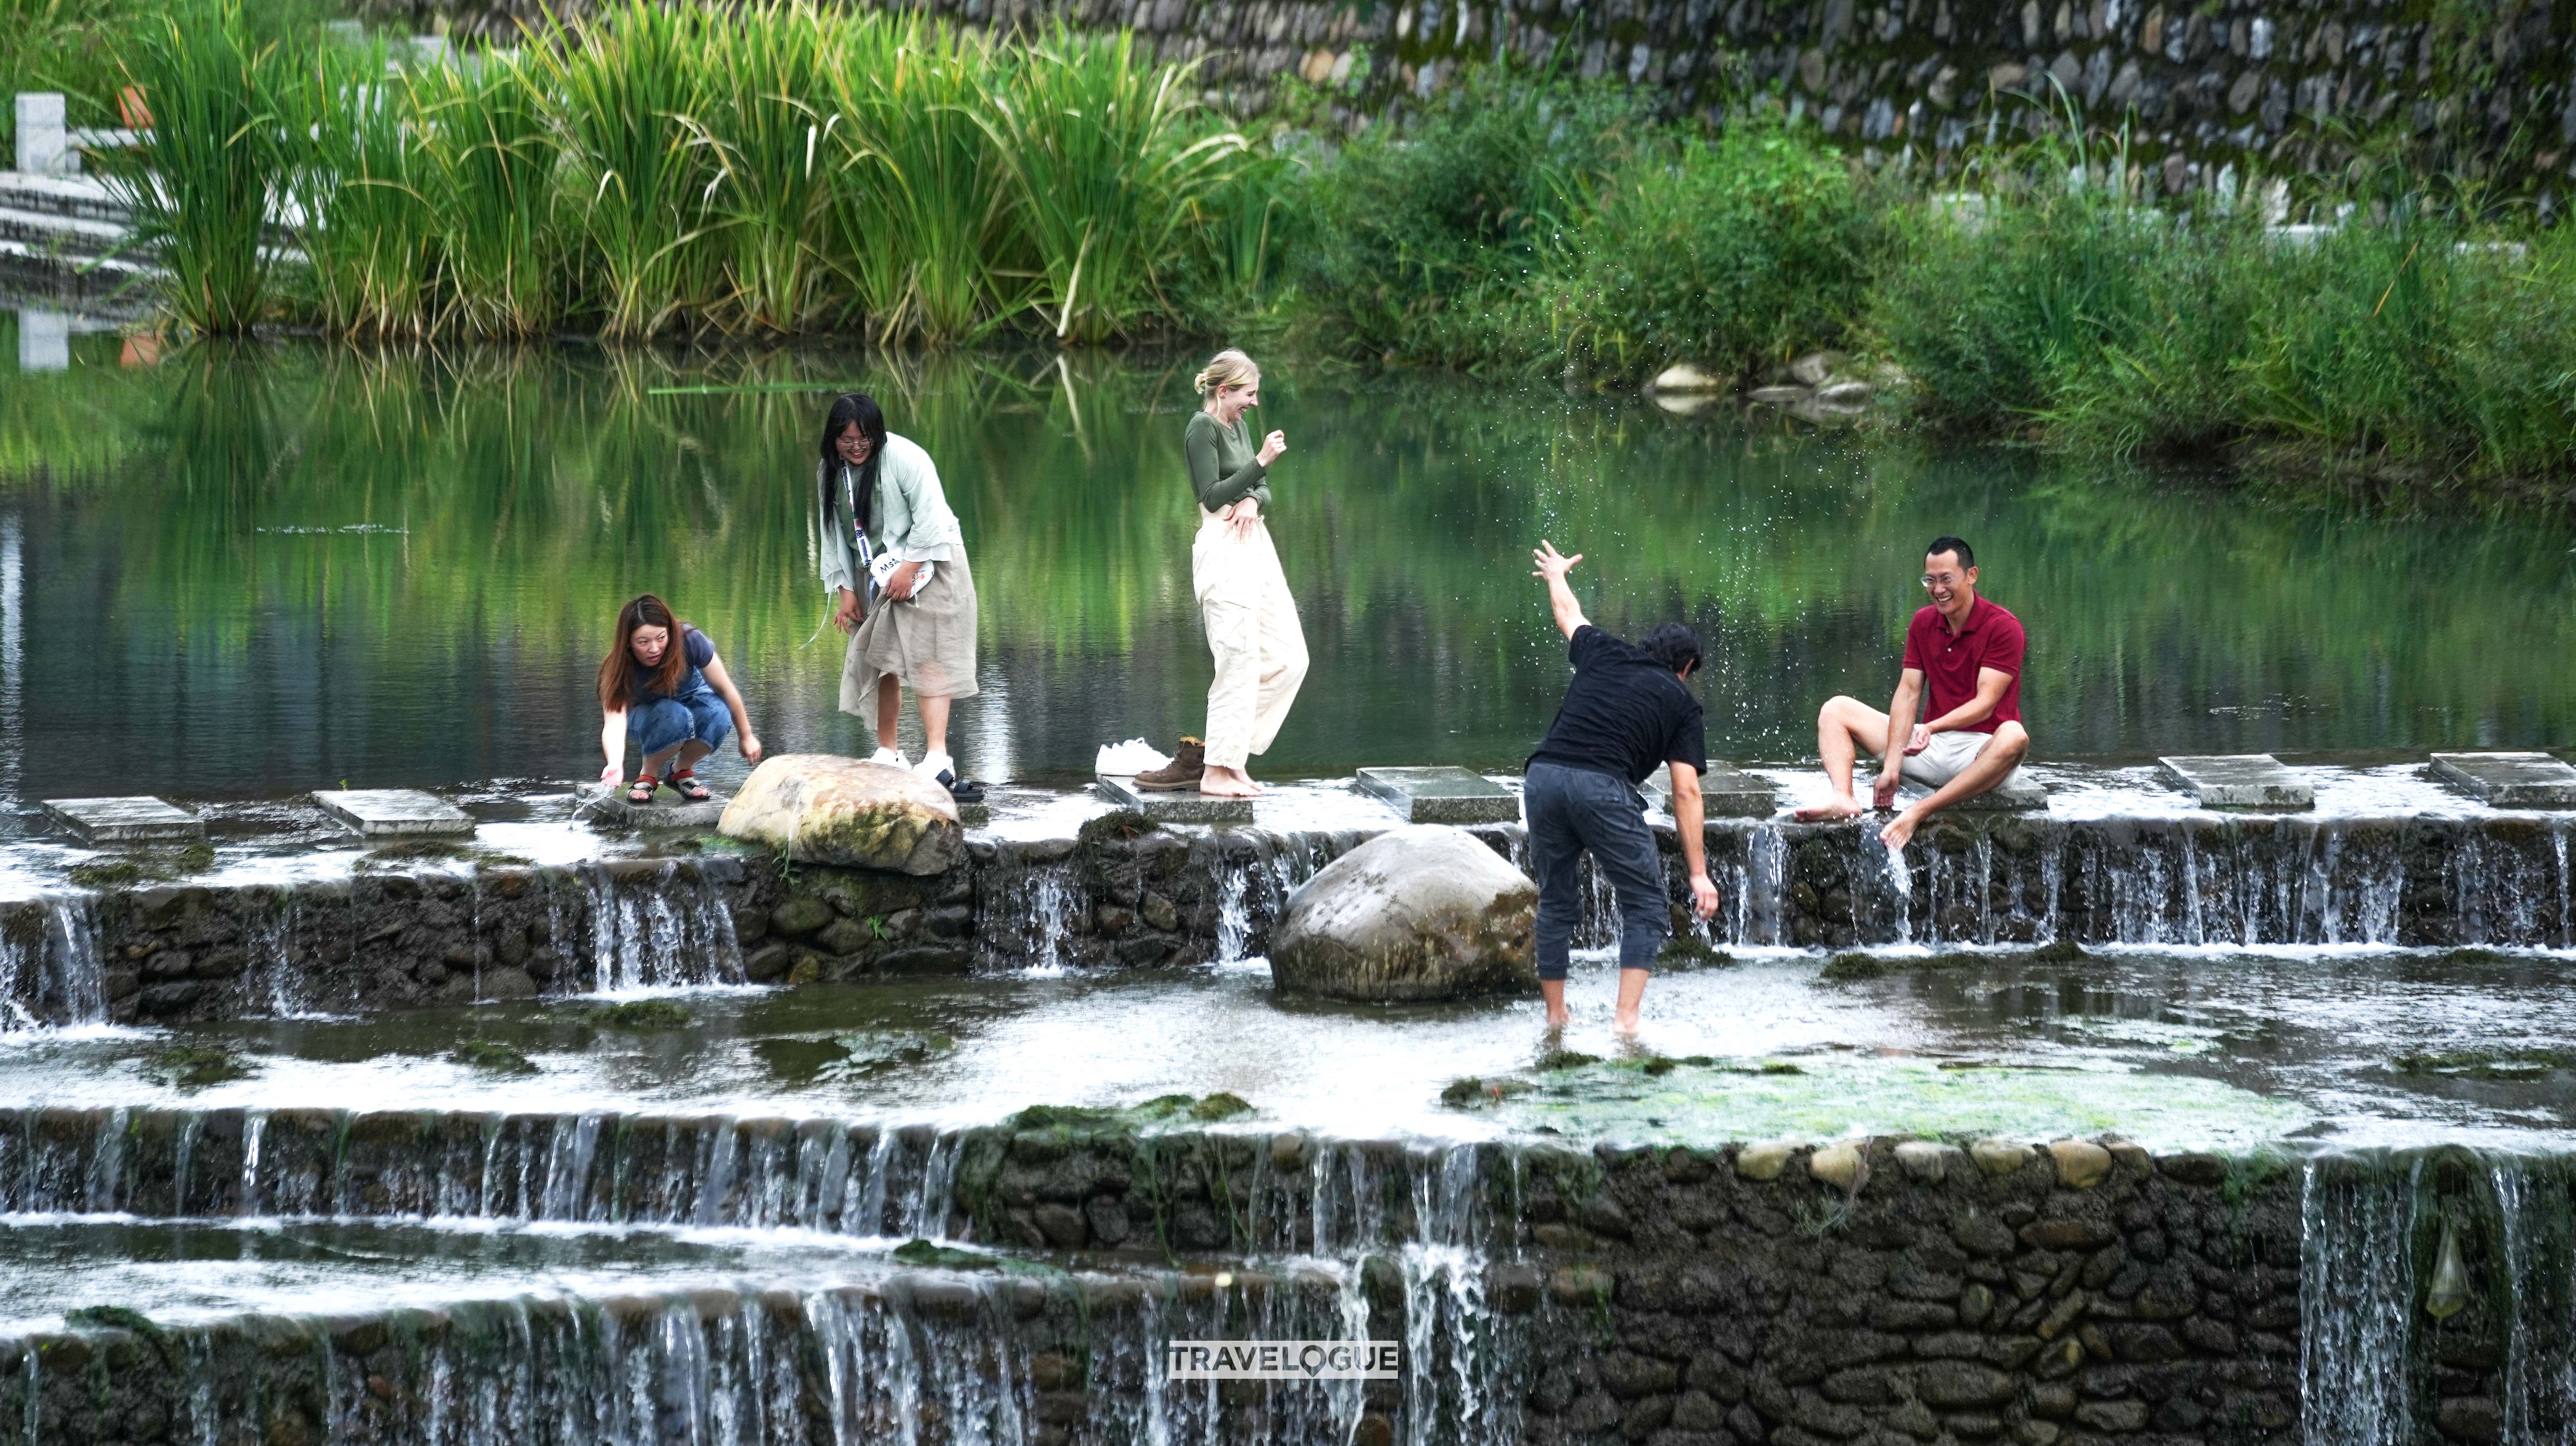 Digital nomads enjoy the natural surroundings in Anji, Zhejiang Province. /CGTN